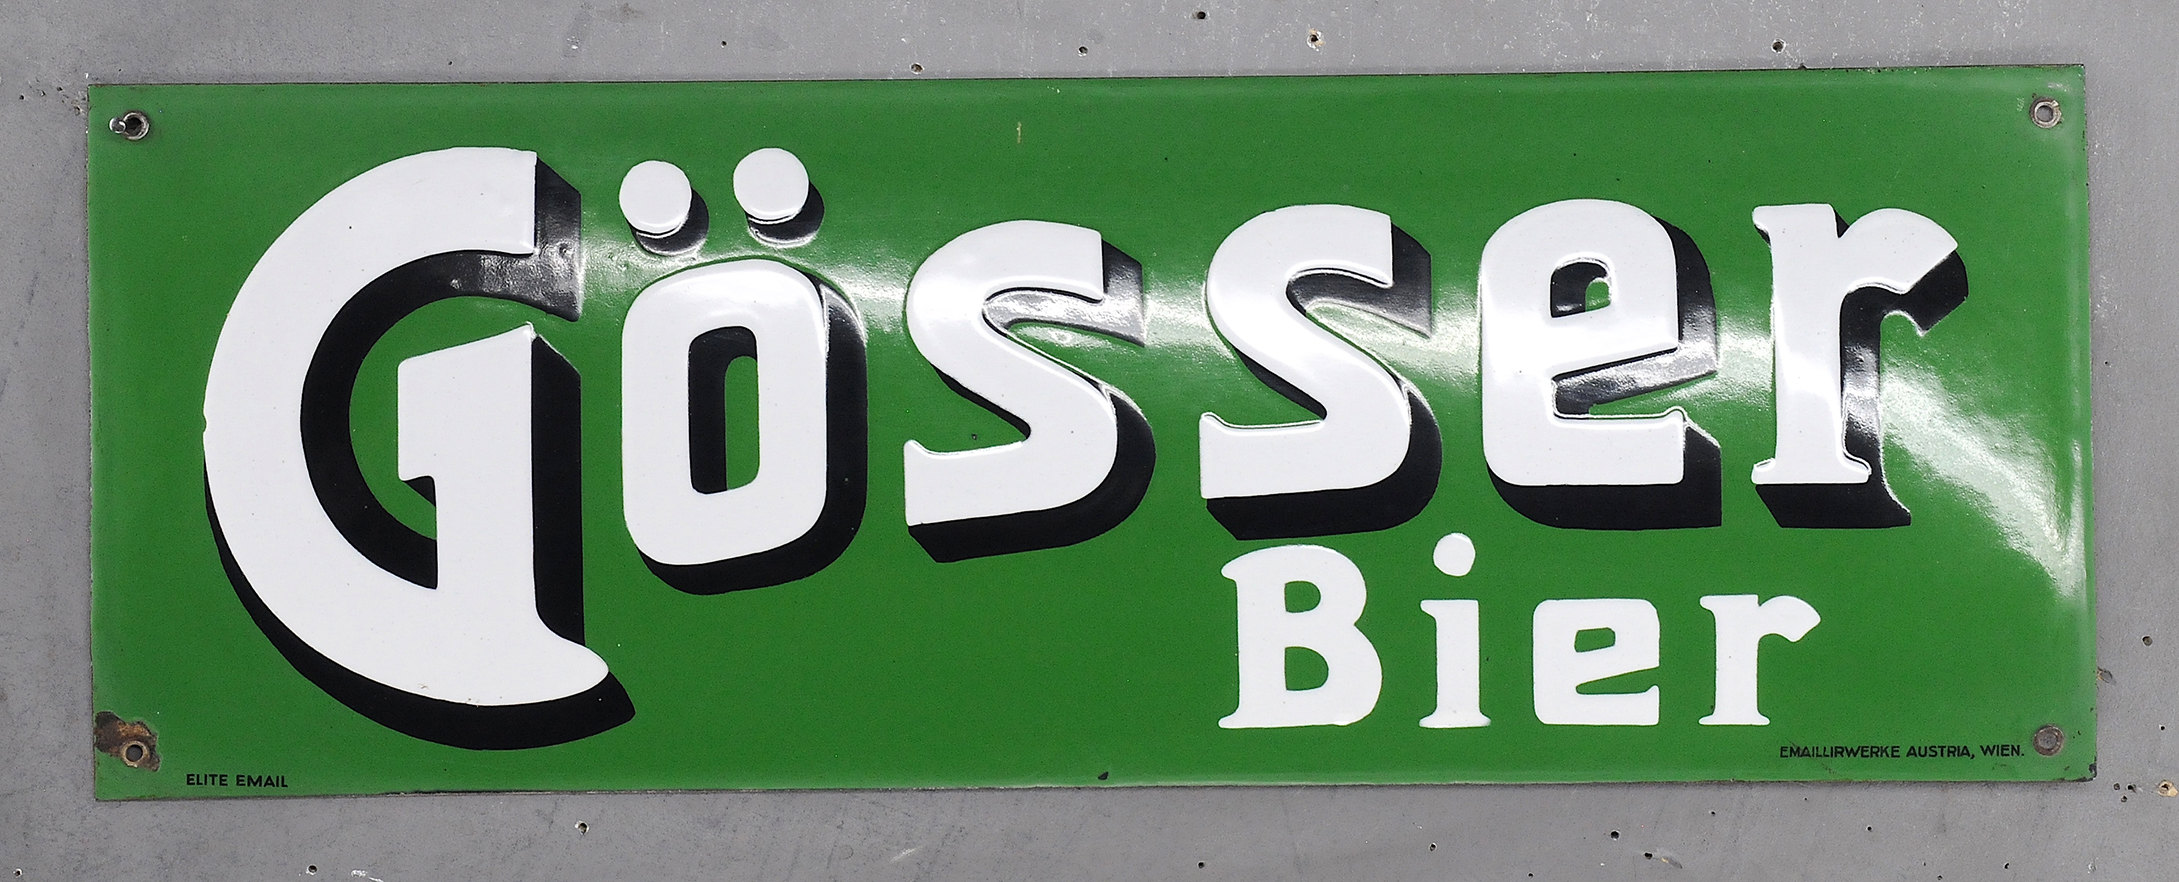 Gösser Bier - Image 3 of 3